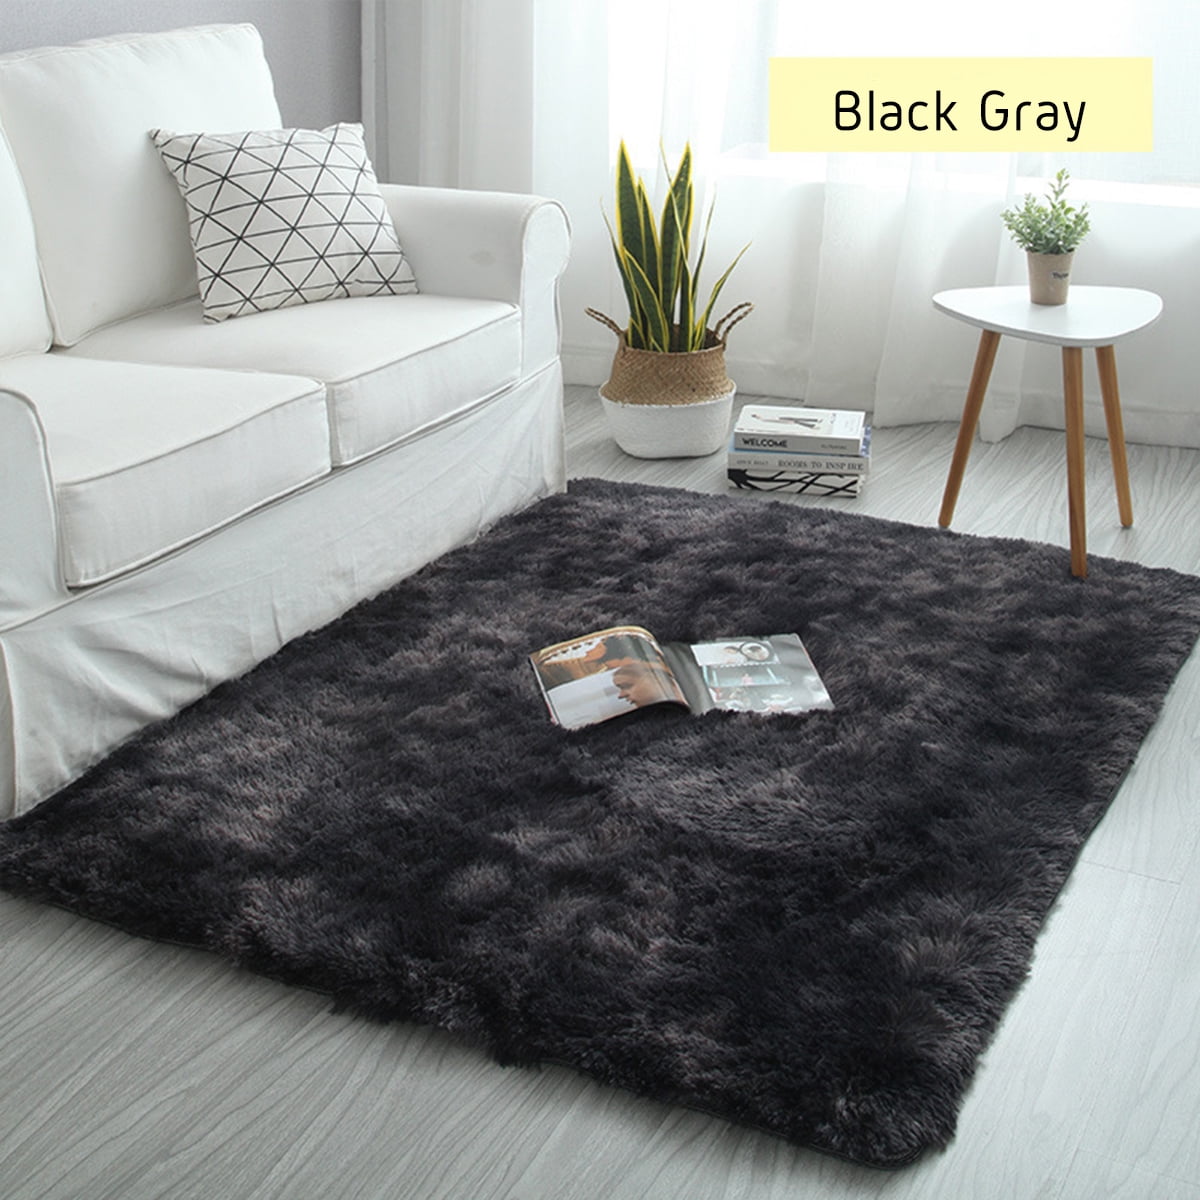 Fluffy Antiskid Shaggy Area Rug Carpet Home Bedroom Floor Dining Room Mat 6A 